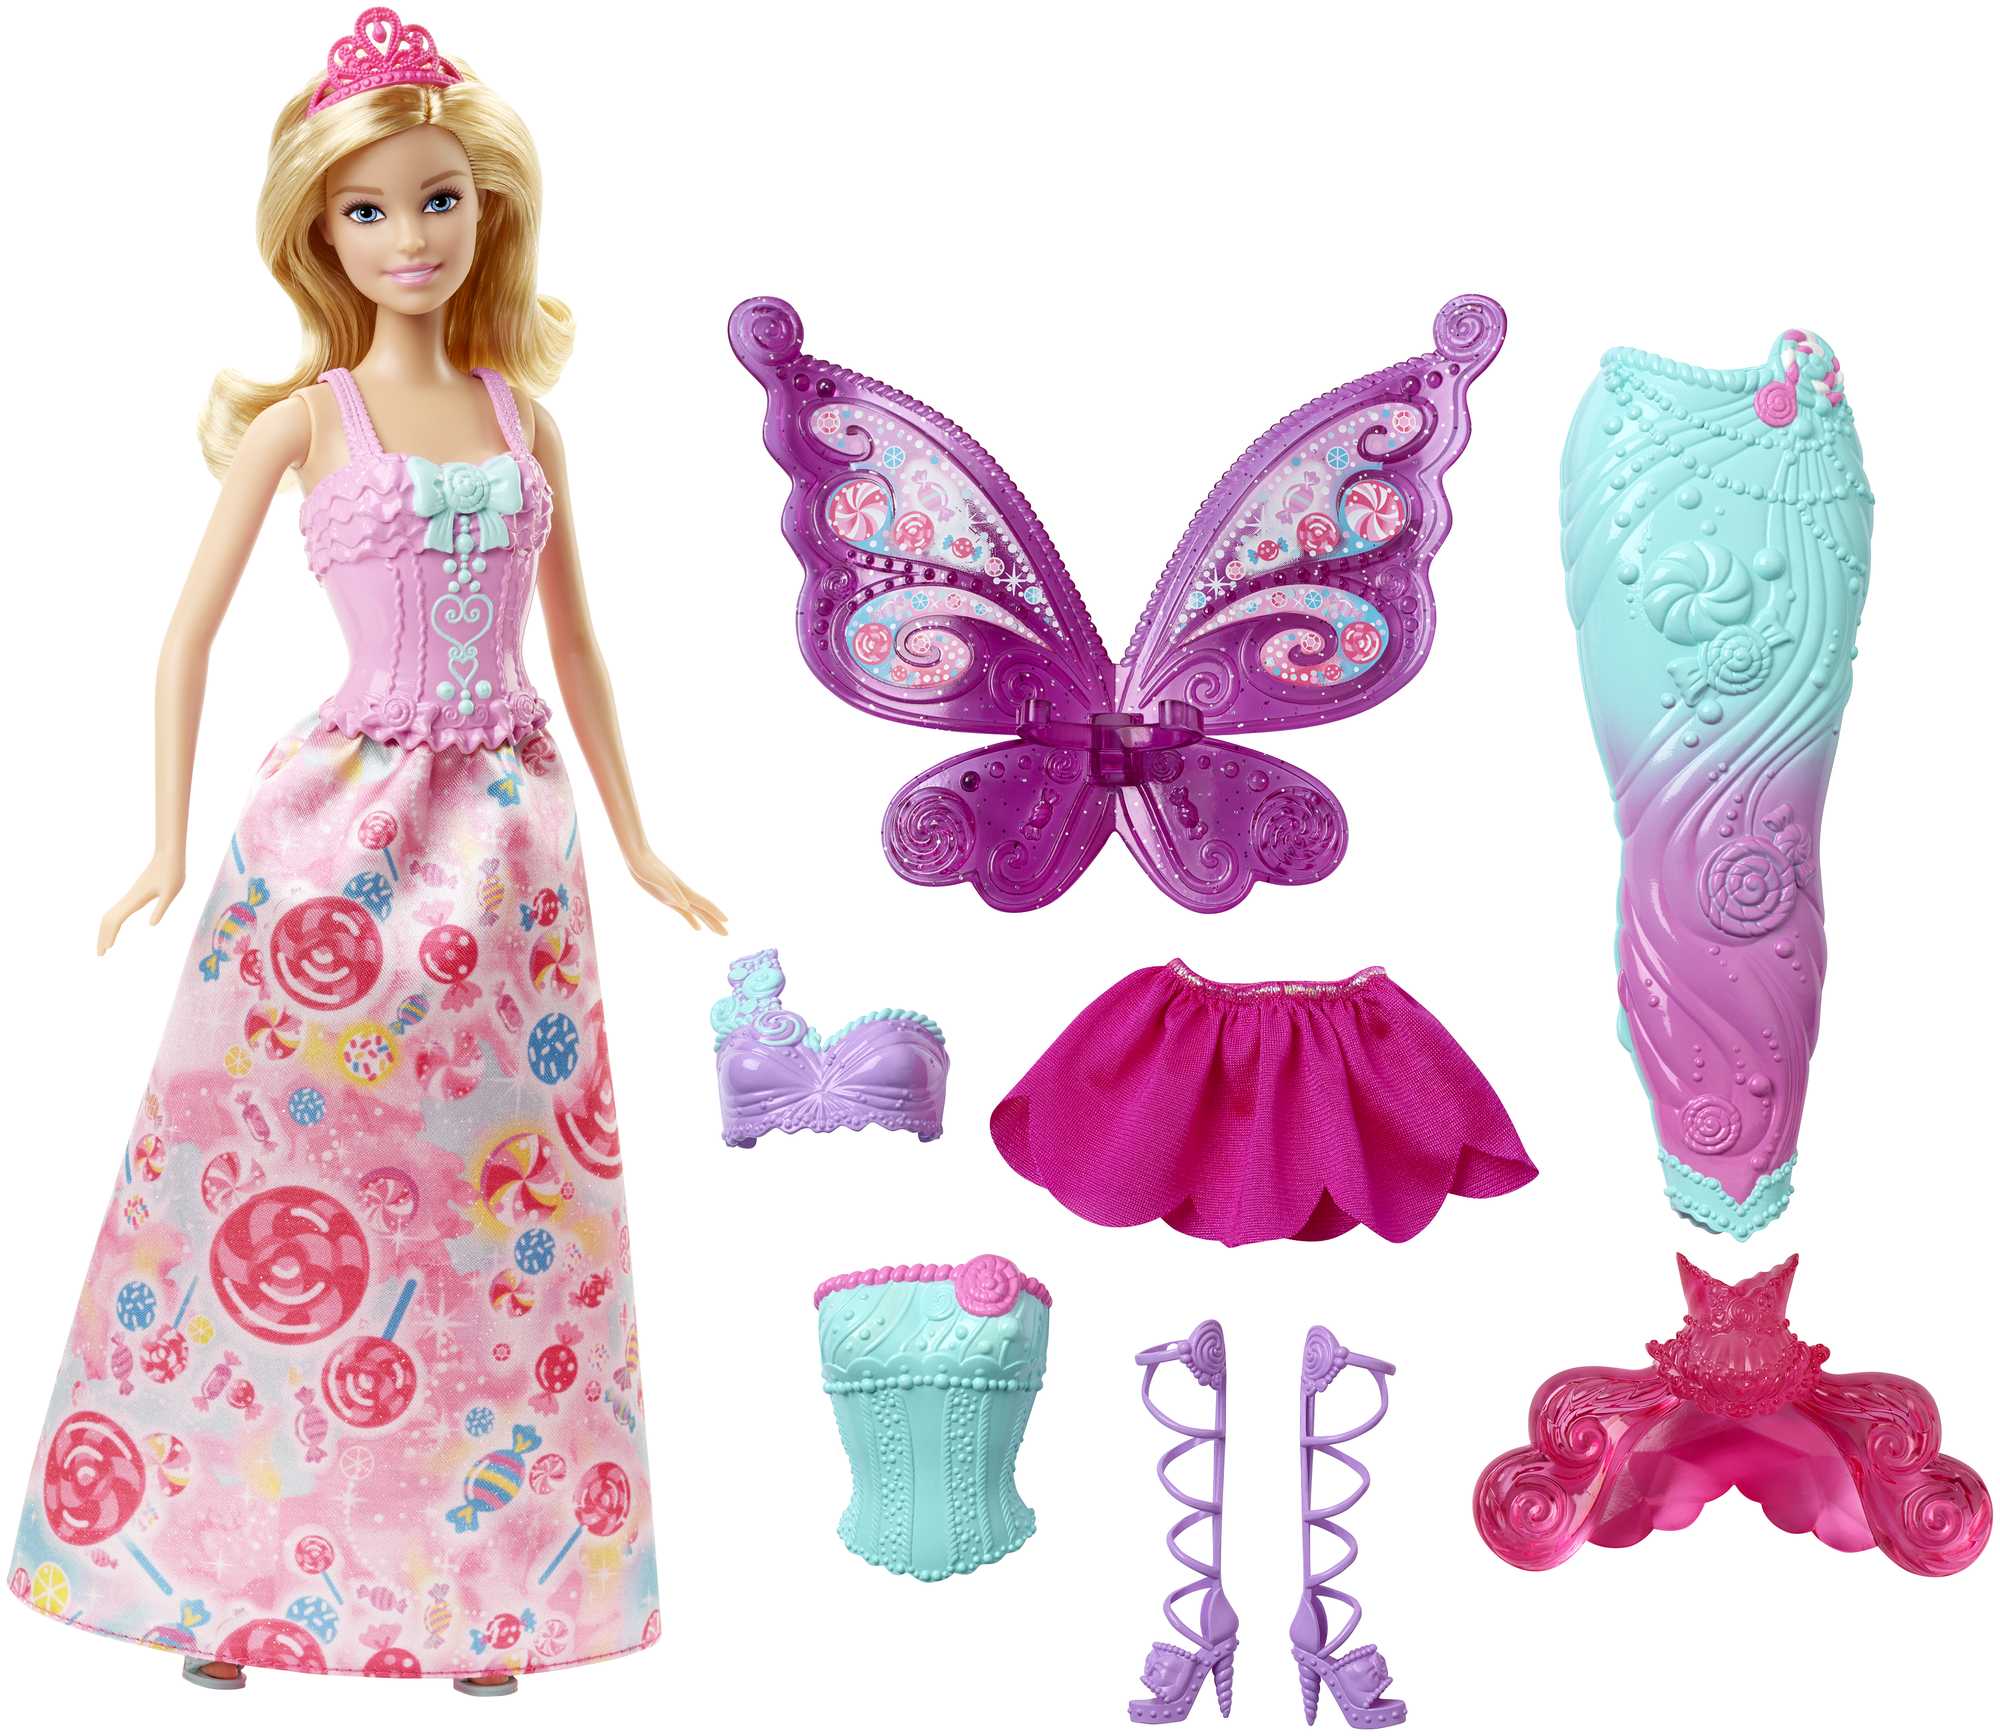 3 fantaziya kıyafeti və aksesuarları olan Barbie kukla, su pərisi və nağıl qanadları da daxil olmaqla